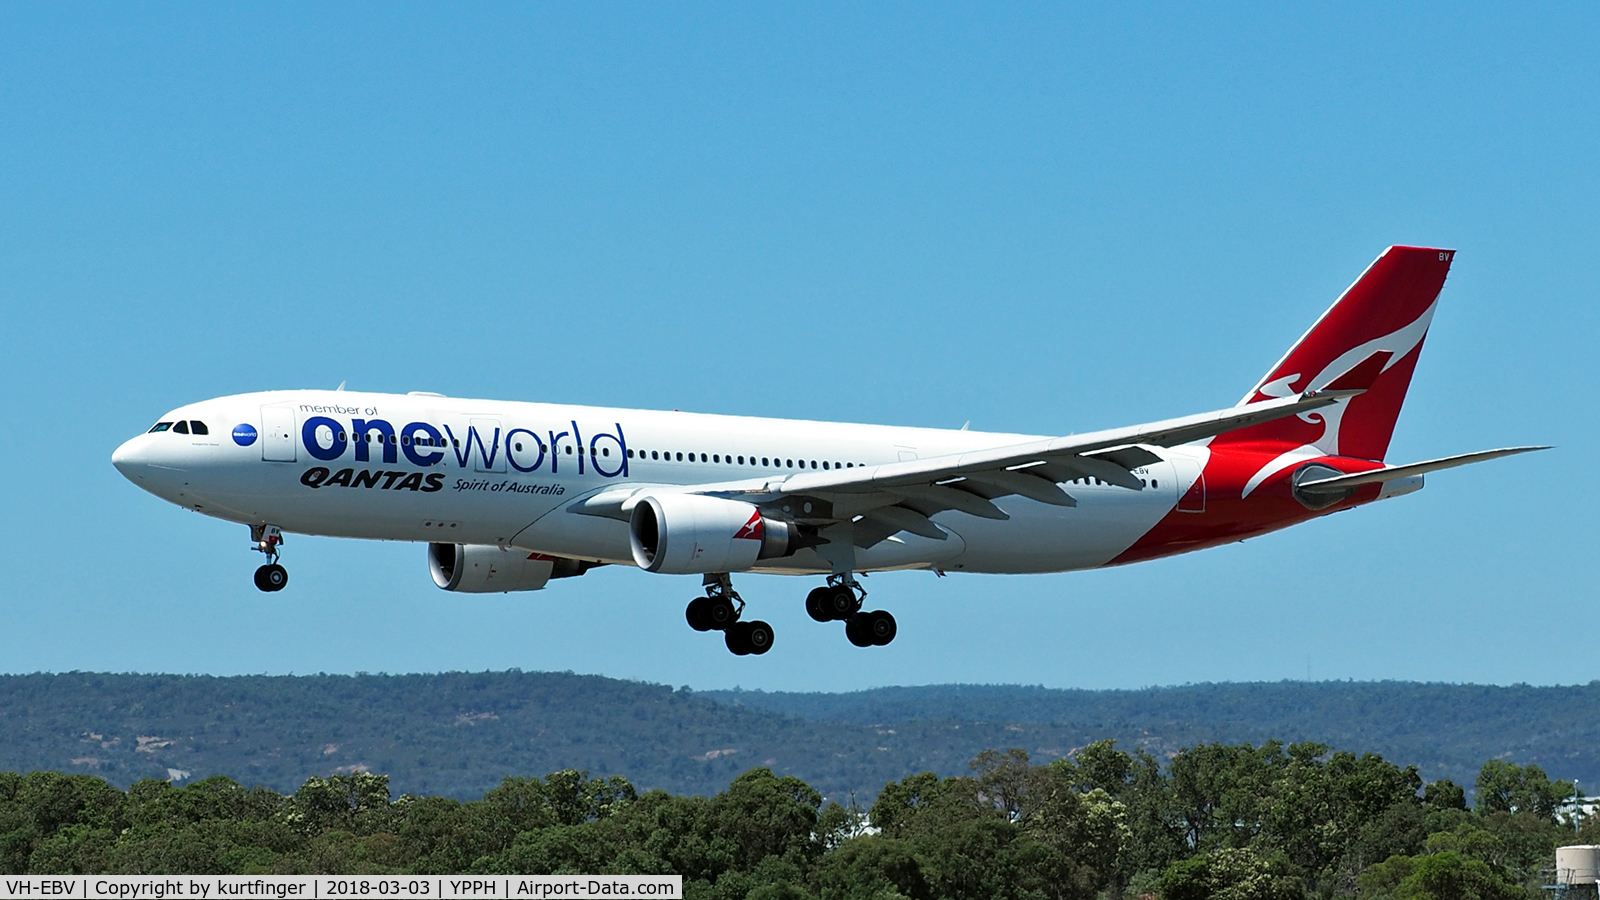 VH-EBV, 2012 Airbus A330-202 C/N 1365, Airbus A330-202. Qantas One World VH-EBV, YPPH final runway 03, 030318.